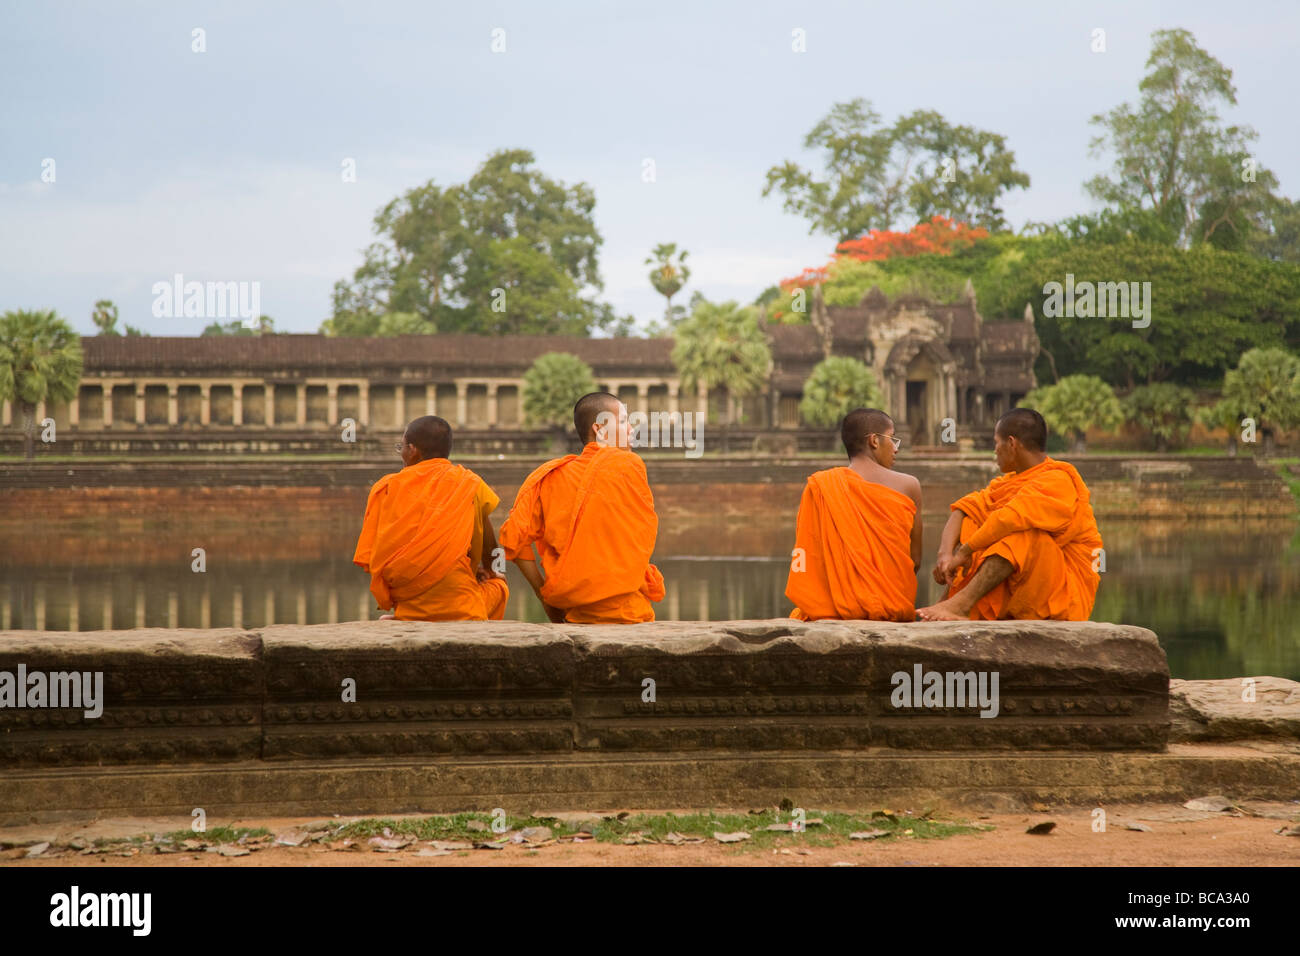 Quatre moines bouddhistes khmers reposant sur mur de pierre de douves extérieures à Phnom Penh - cambodge Banque D'Images